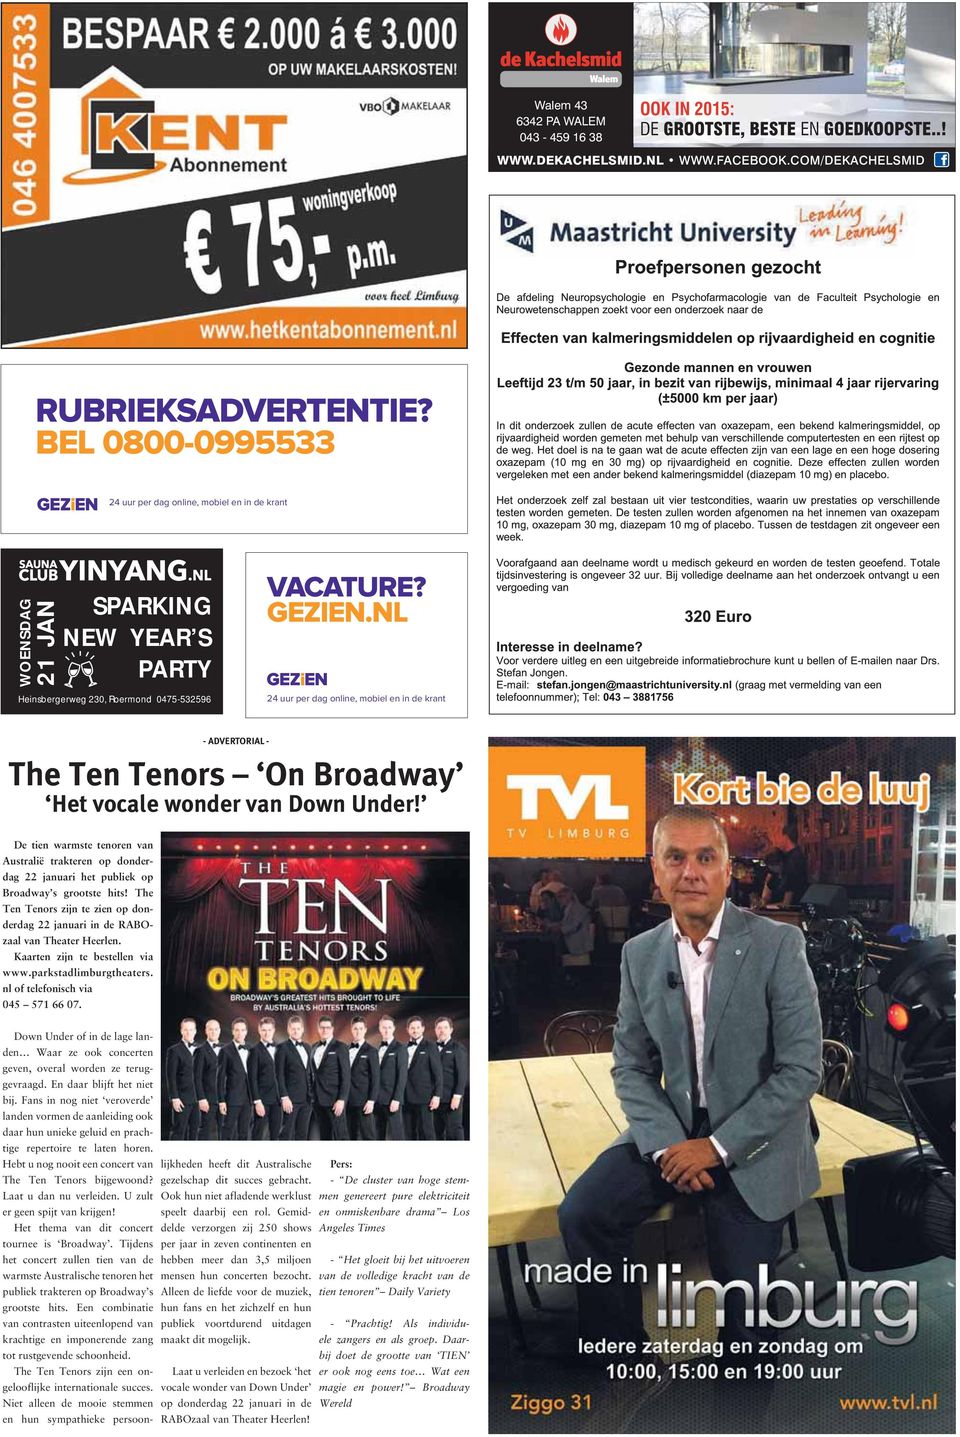 NL Heinsbergerweg 230, Roermond 0475-532596 24 uur per dag online, mobiel en in de krant - ADVERTORIAL - The Ten Tenors On Broadway Het vocale wonder van Down Under!